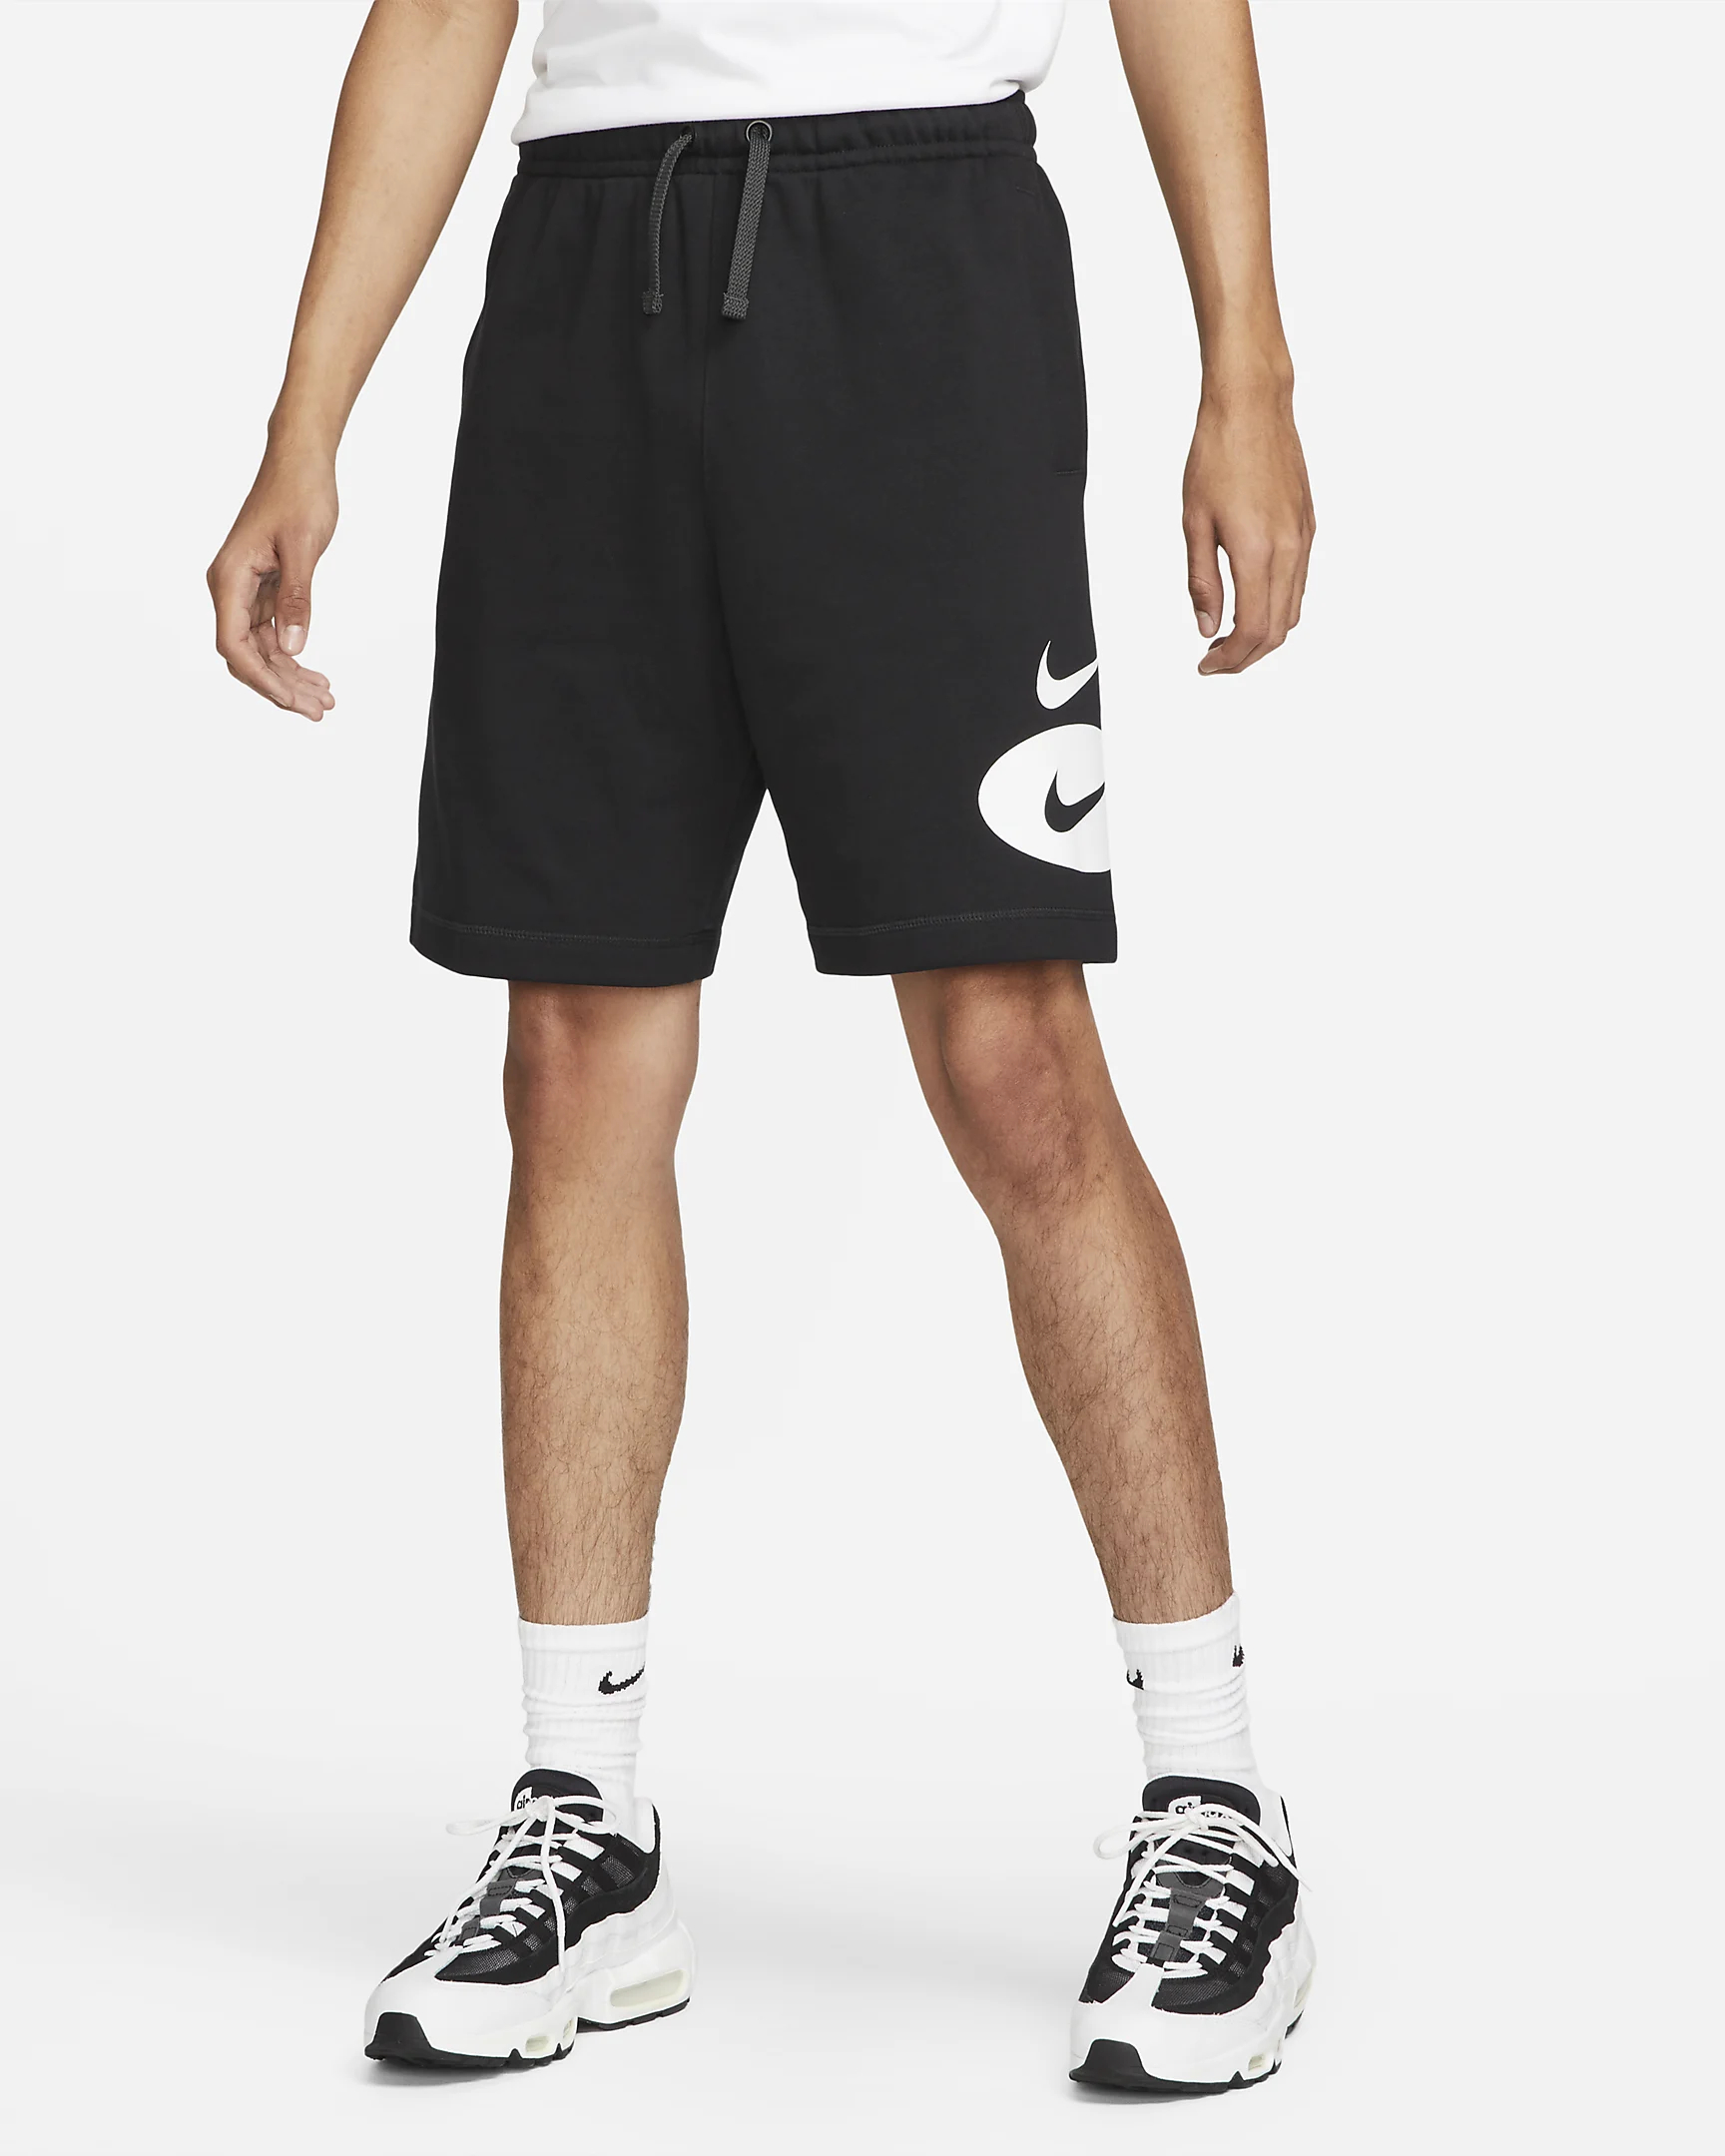 Спортивные шорты мужские Nike Nsw Sl Ft Short DM5487-010 черные S